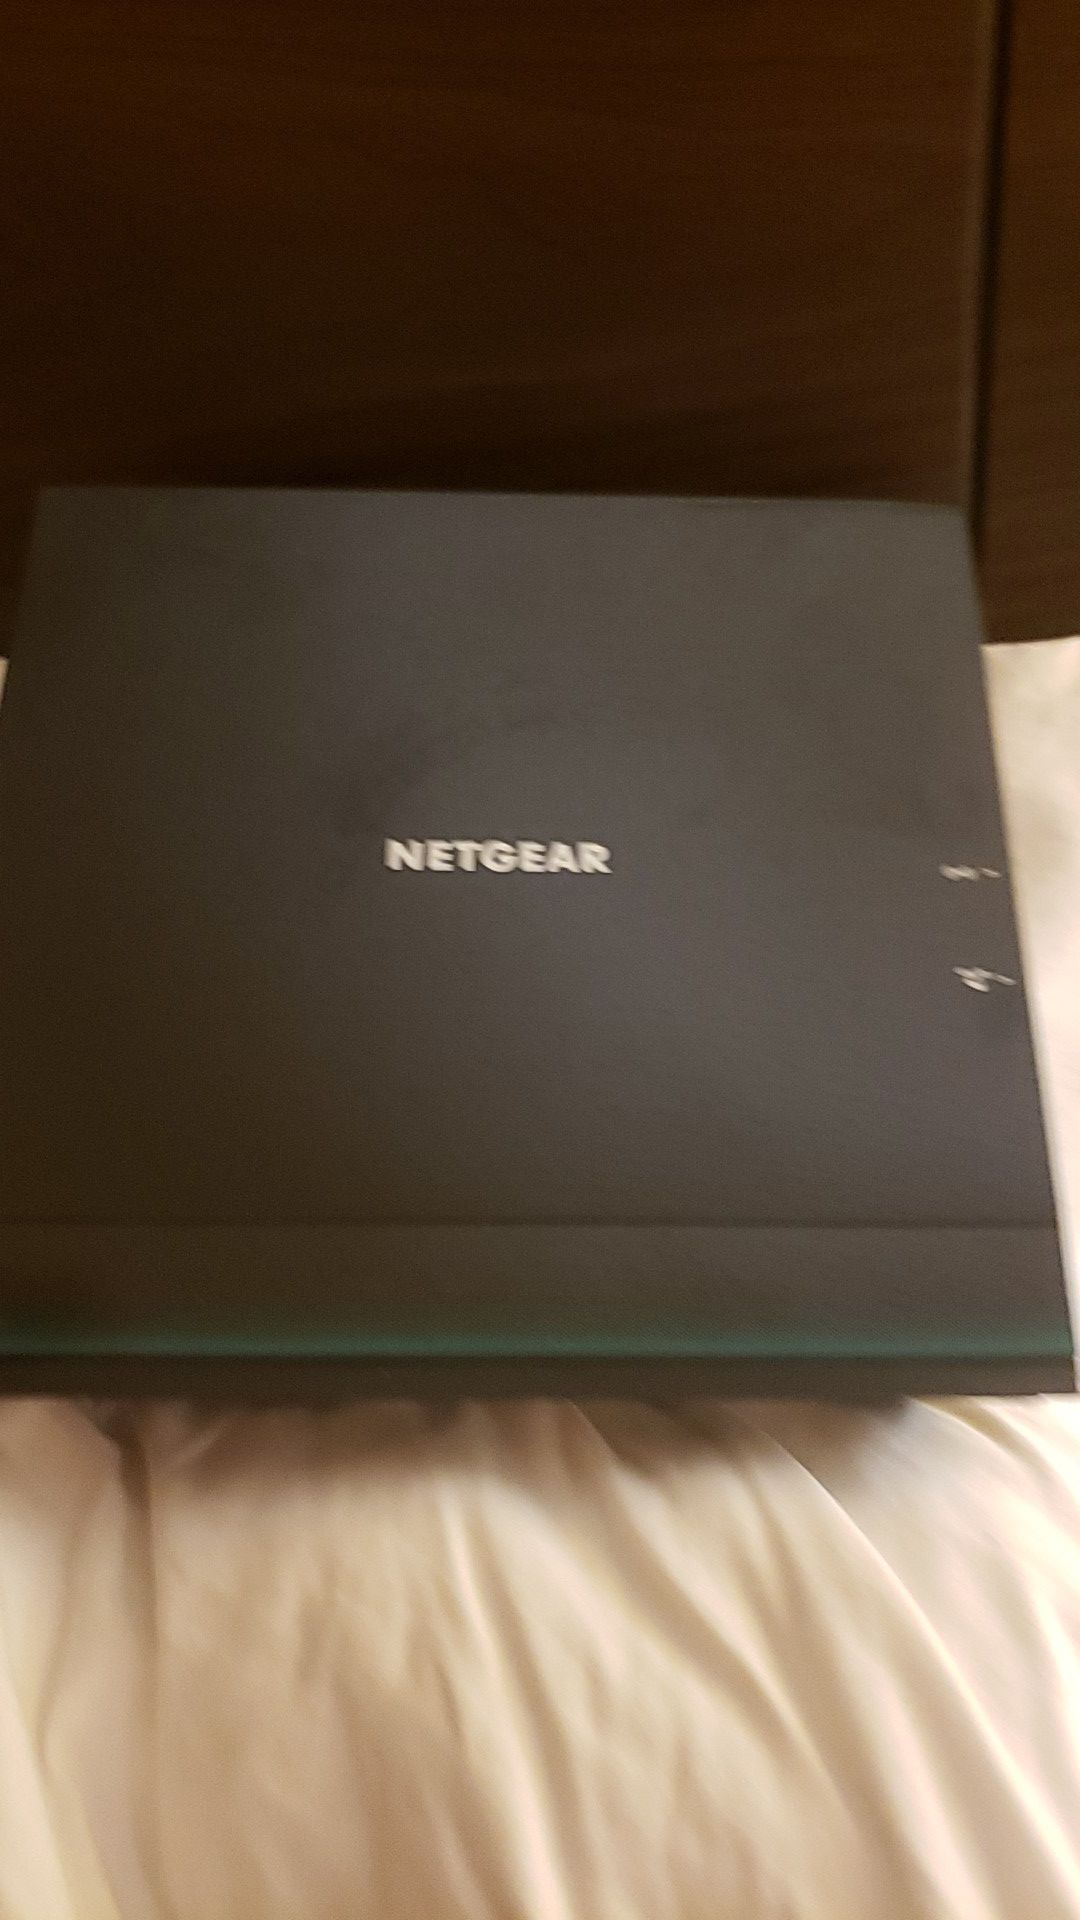 NetGear 6100 Wireless AC Router